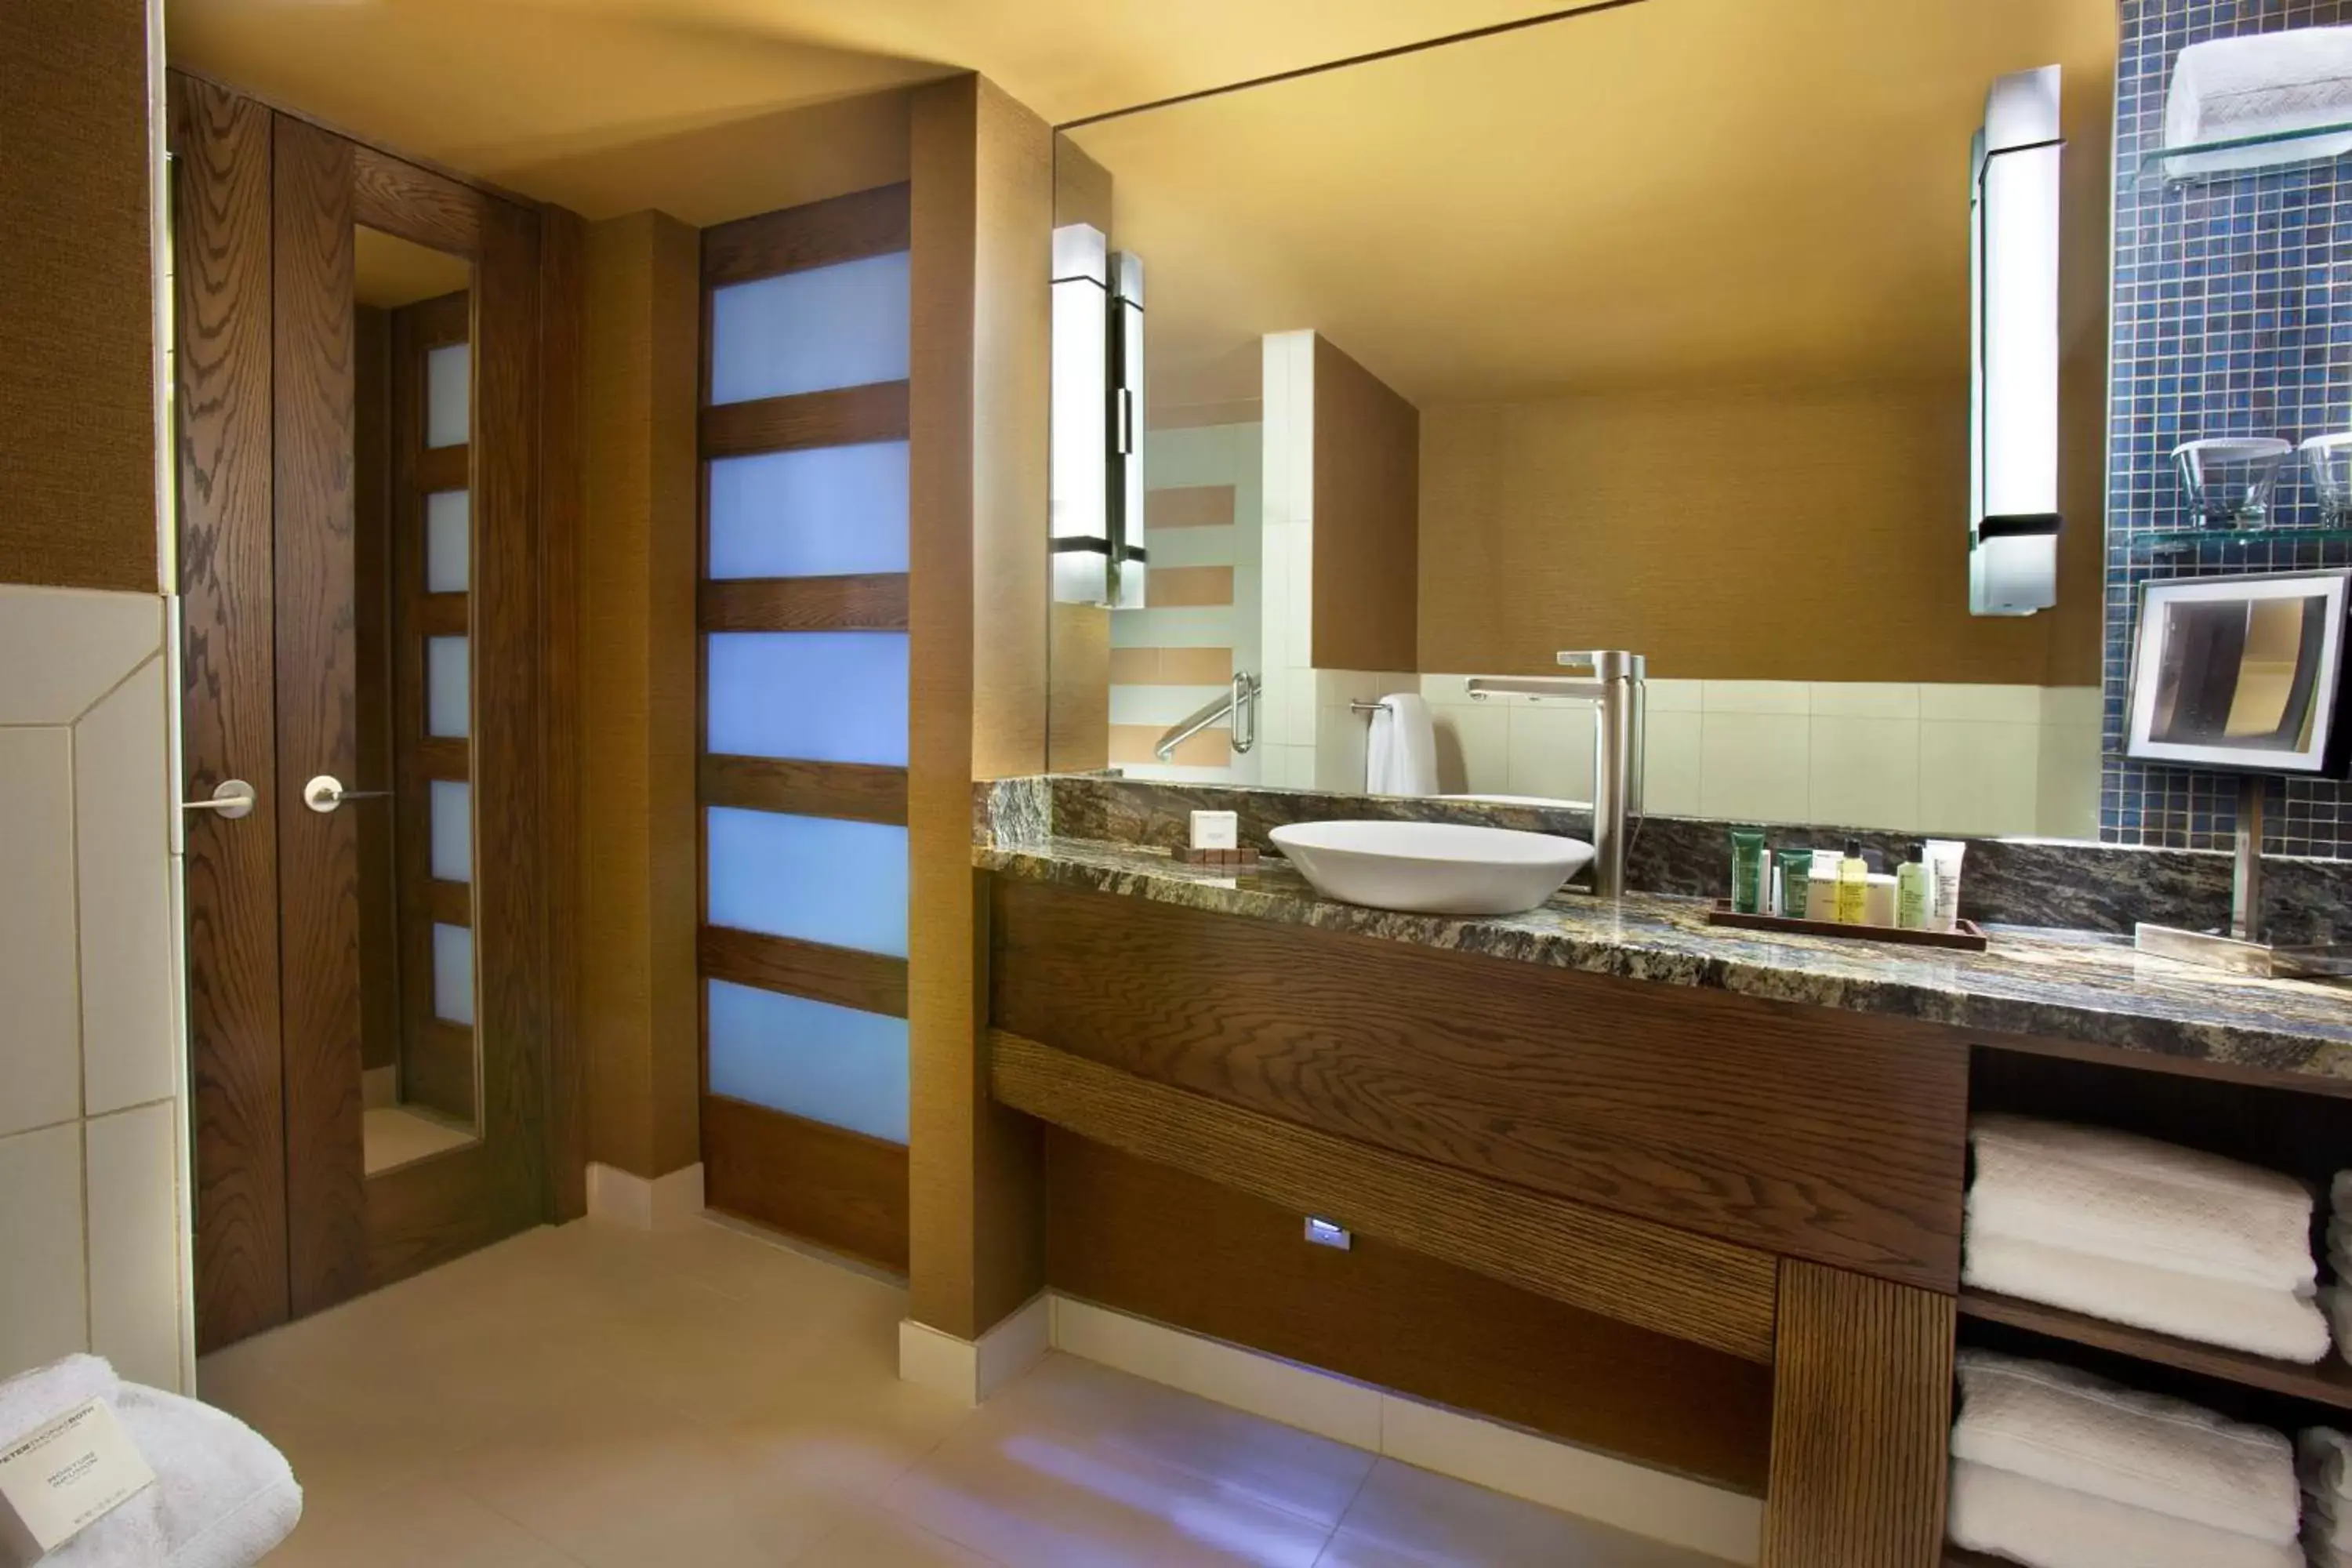 Bathroom in Hilton Palacio del Rio